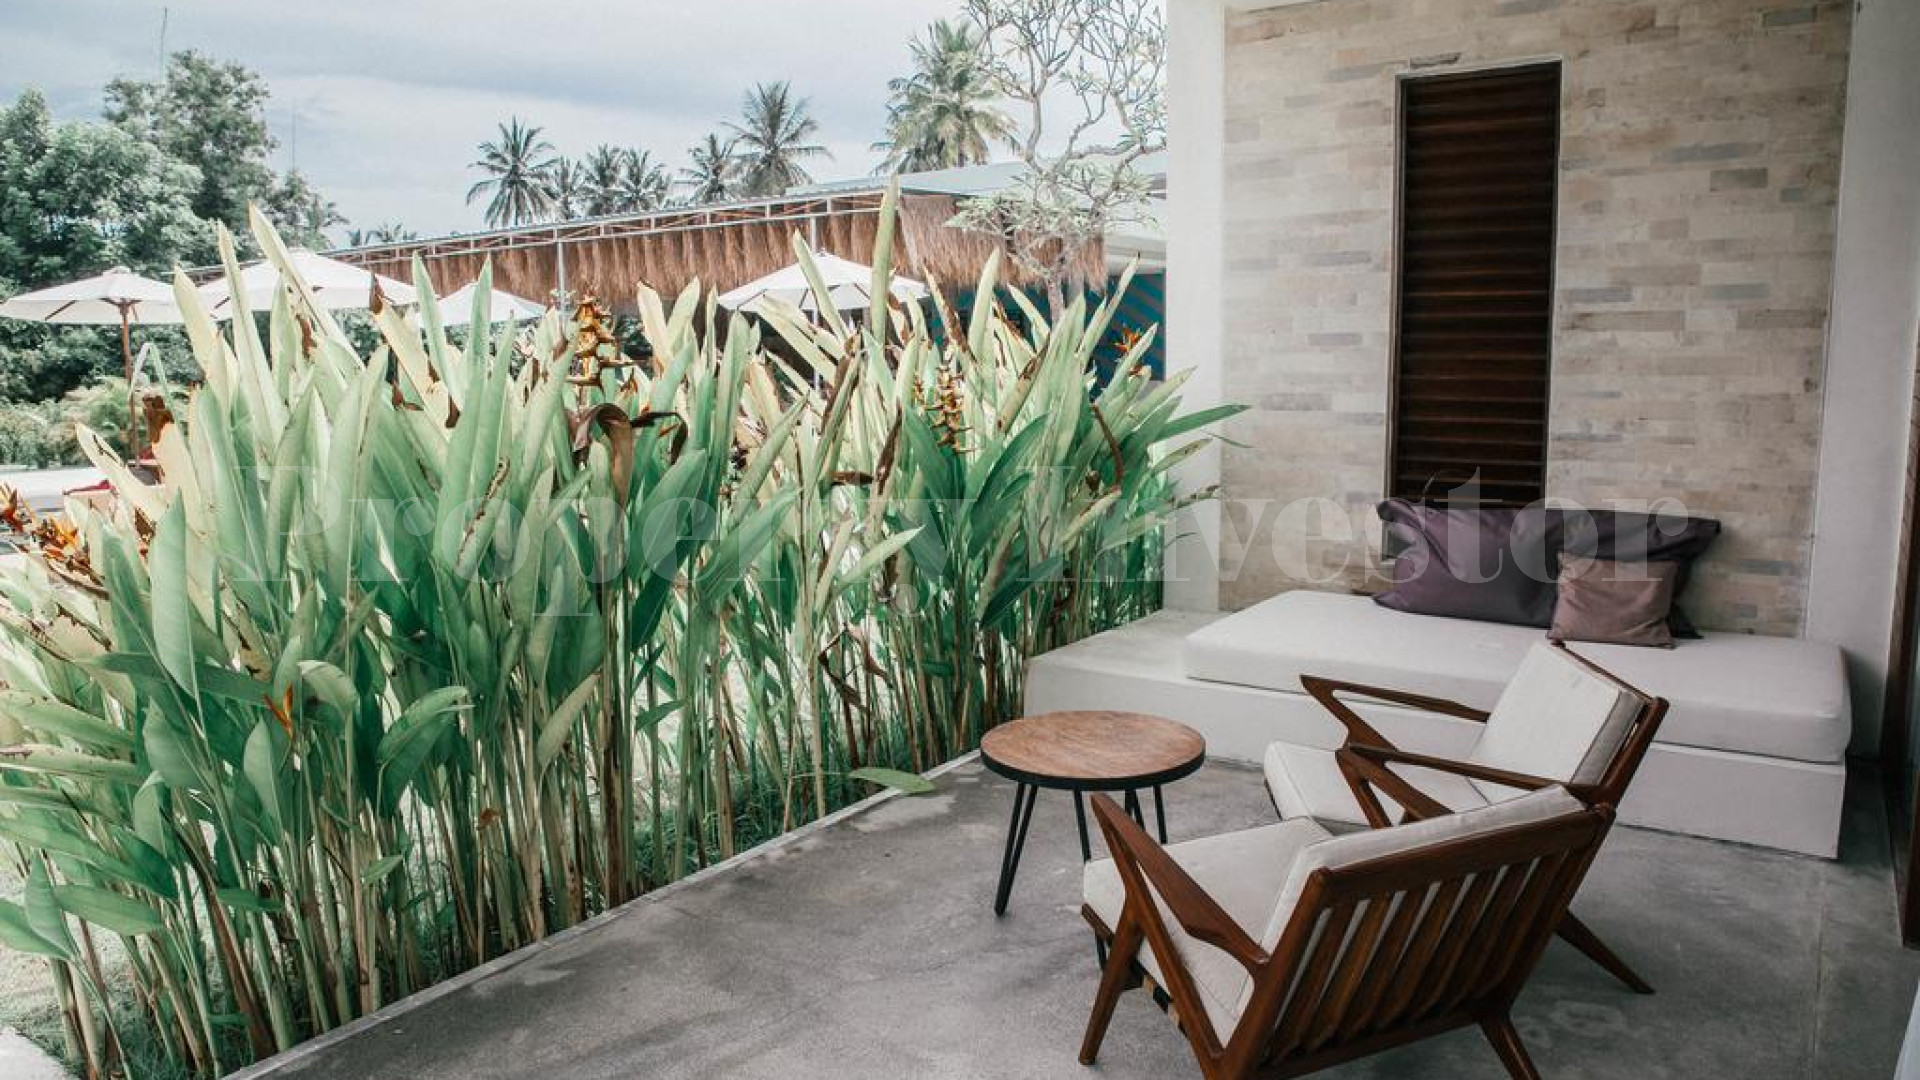 Бутик отель на 33 номера с готовым планом по расширению в Ломбок, Индонезия